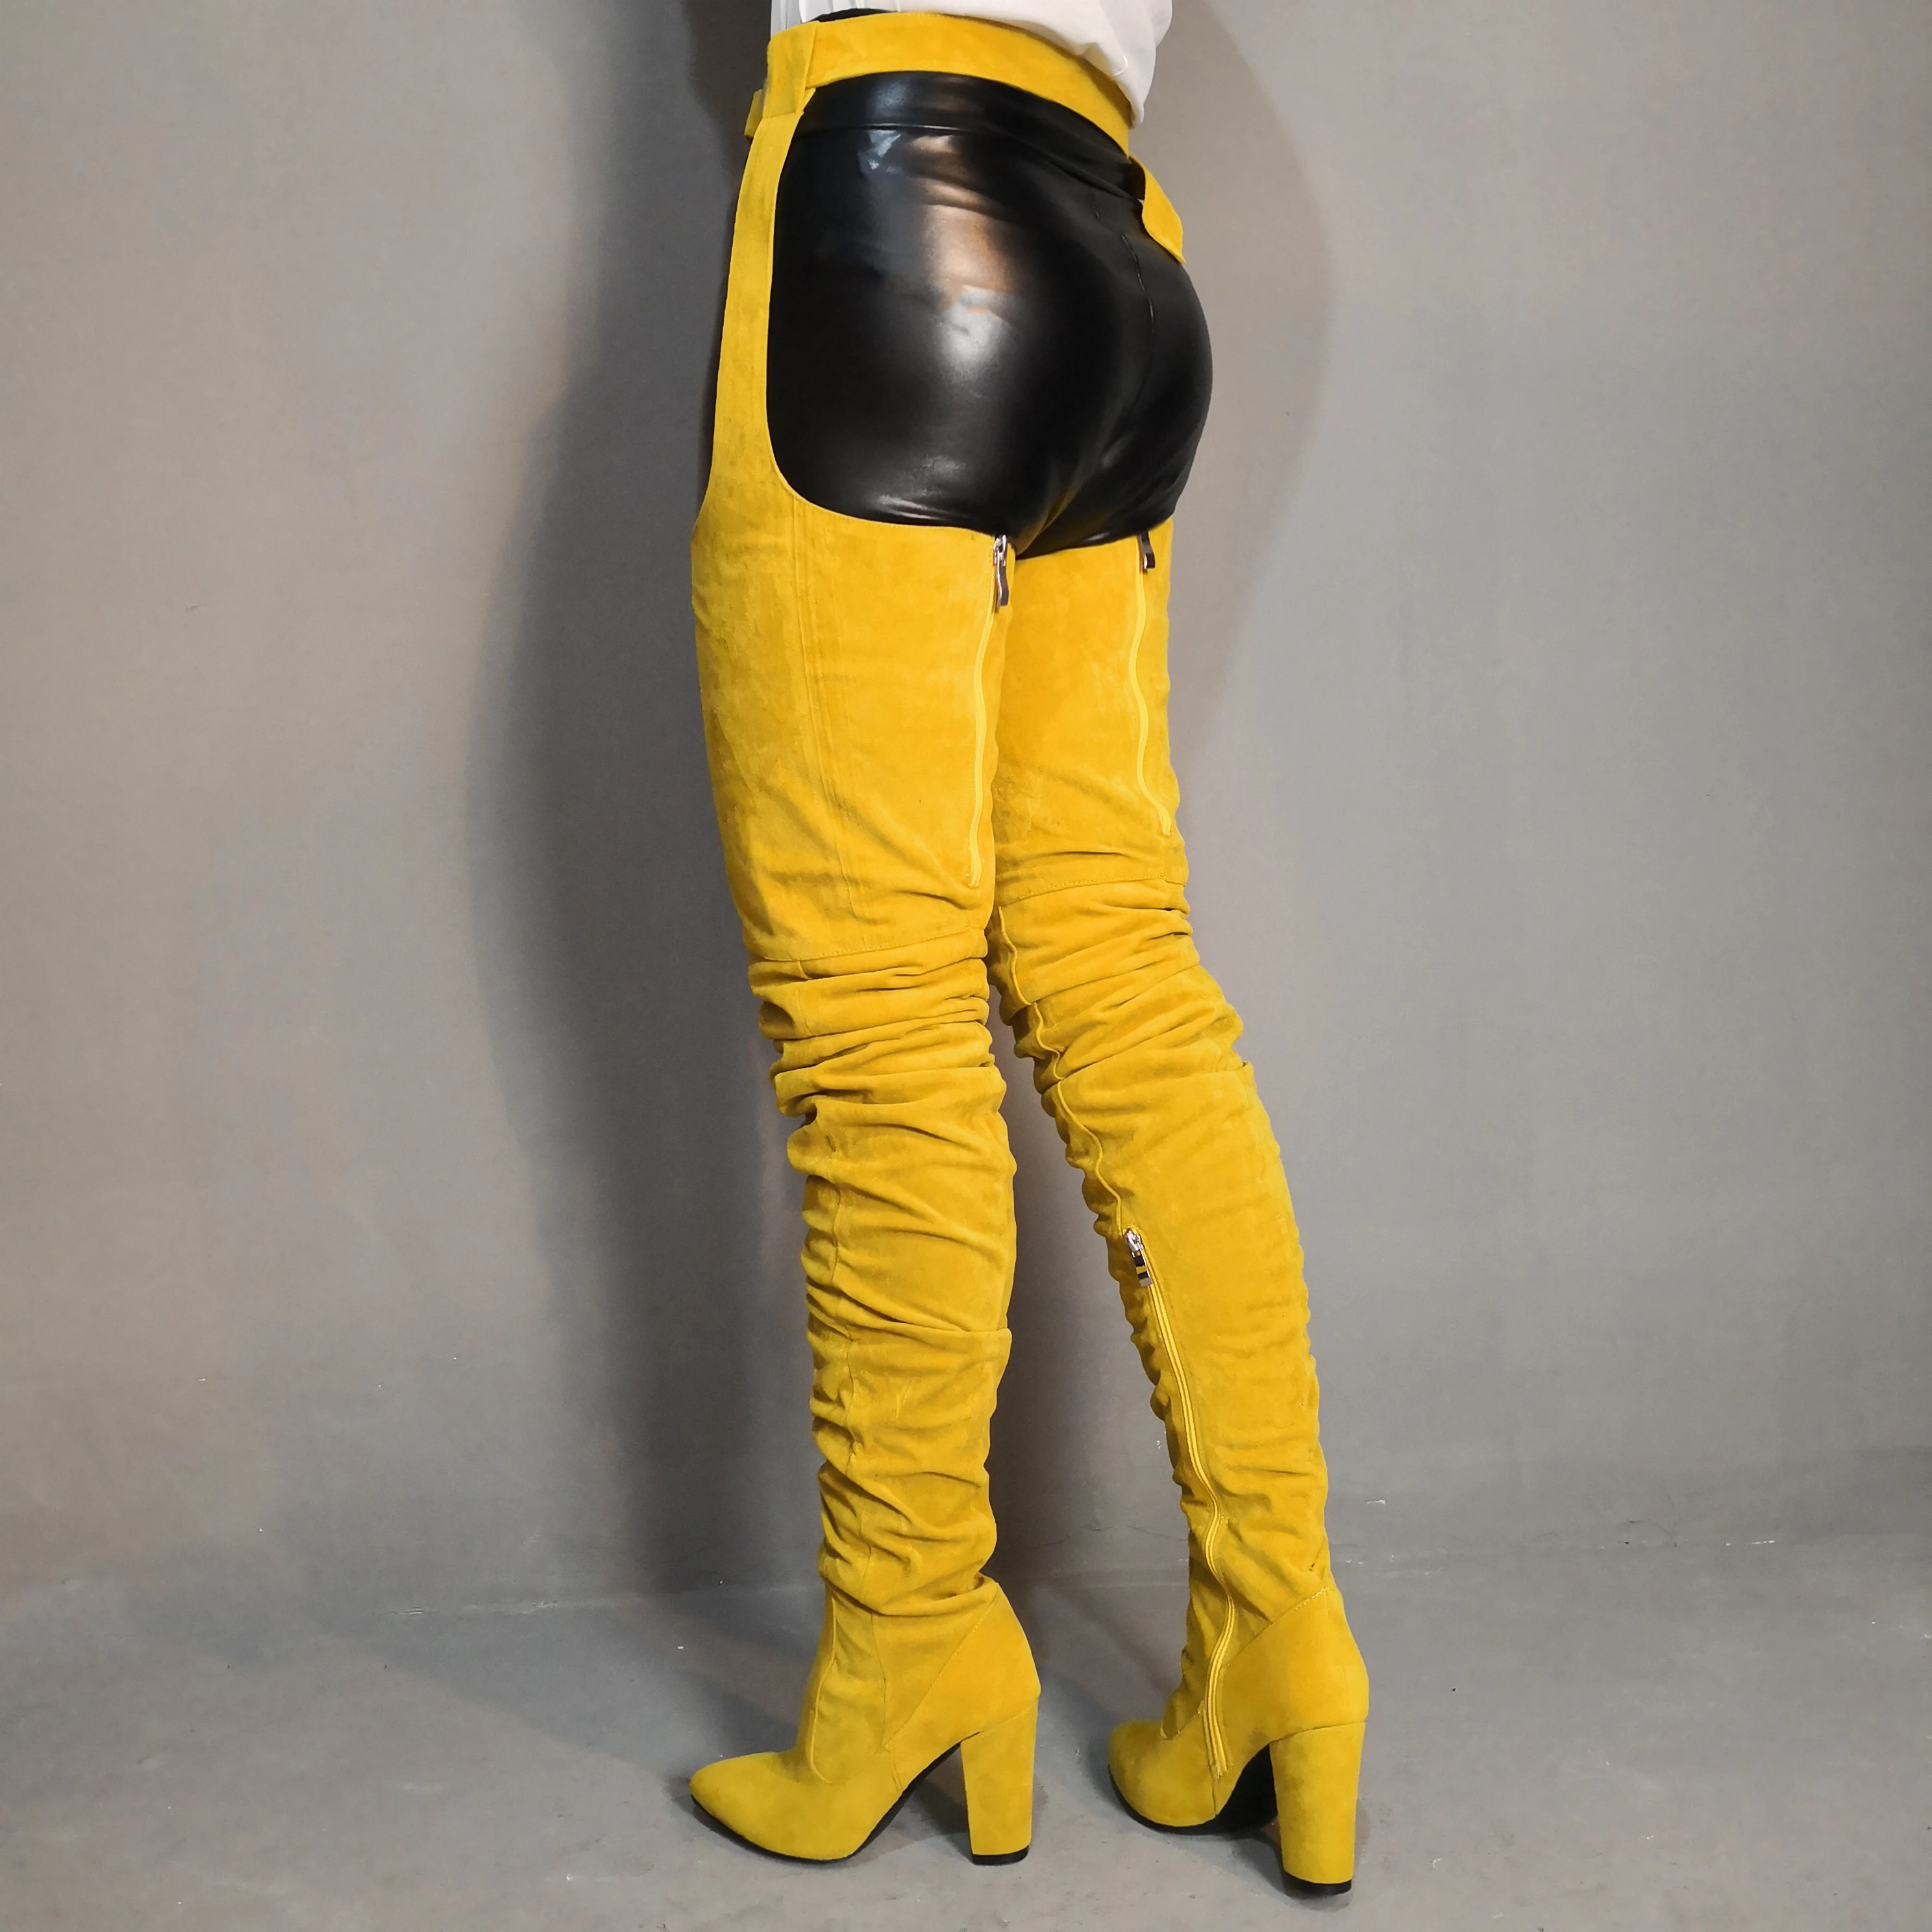 LAIGZEM Rihanna/высокие сапоги до бедра сапоги выше колена из искусственной замши на не сужающемся книзу массивном каблуке модные сапоги на молнии с ремешком на талии большие размеры 34-47